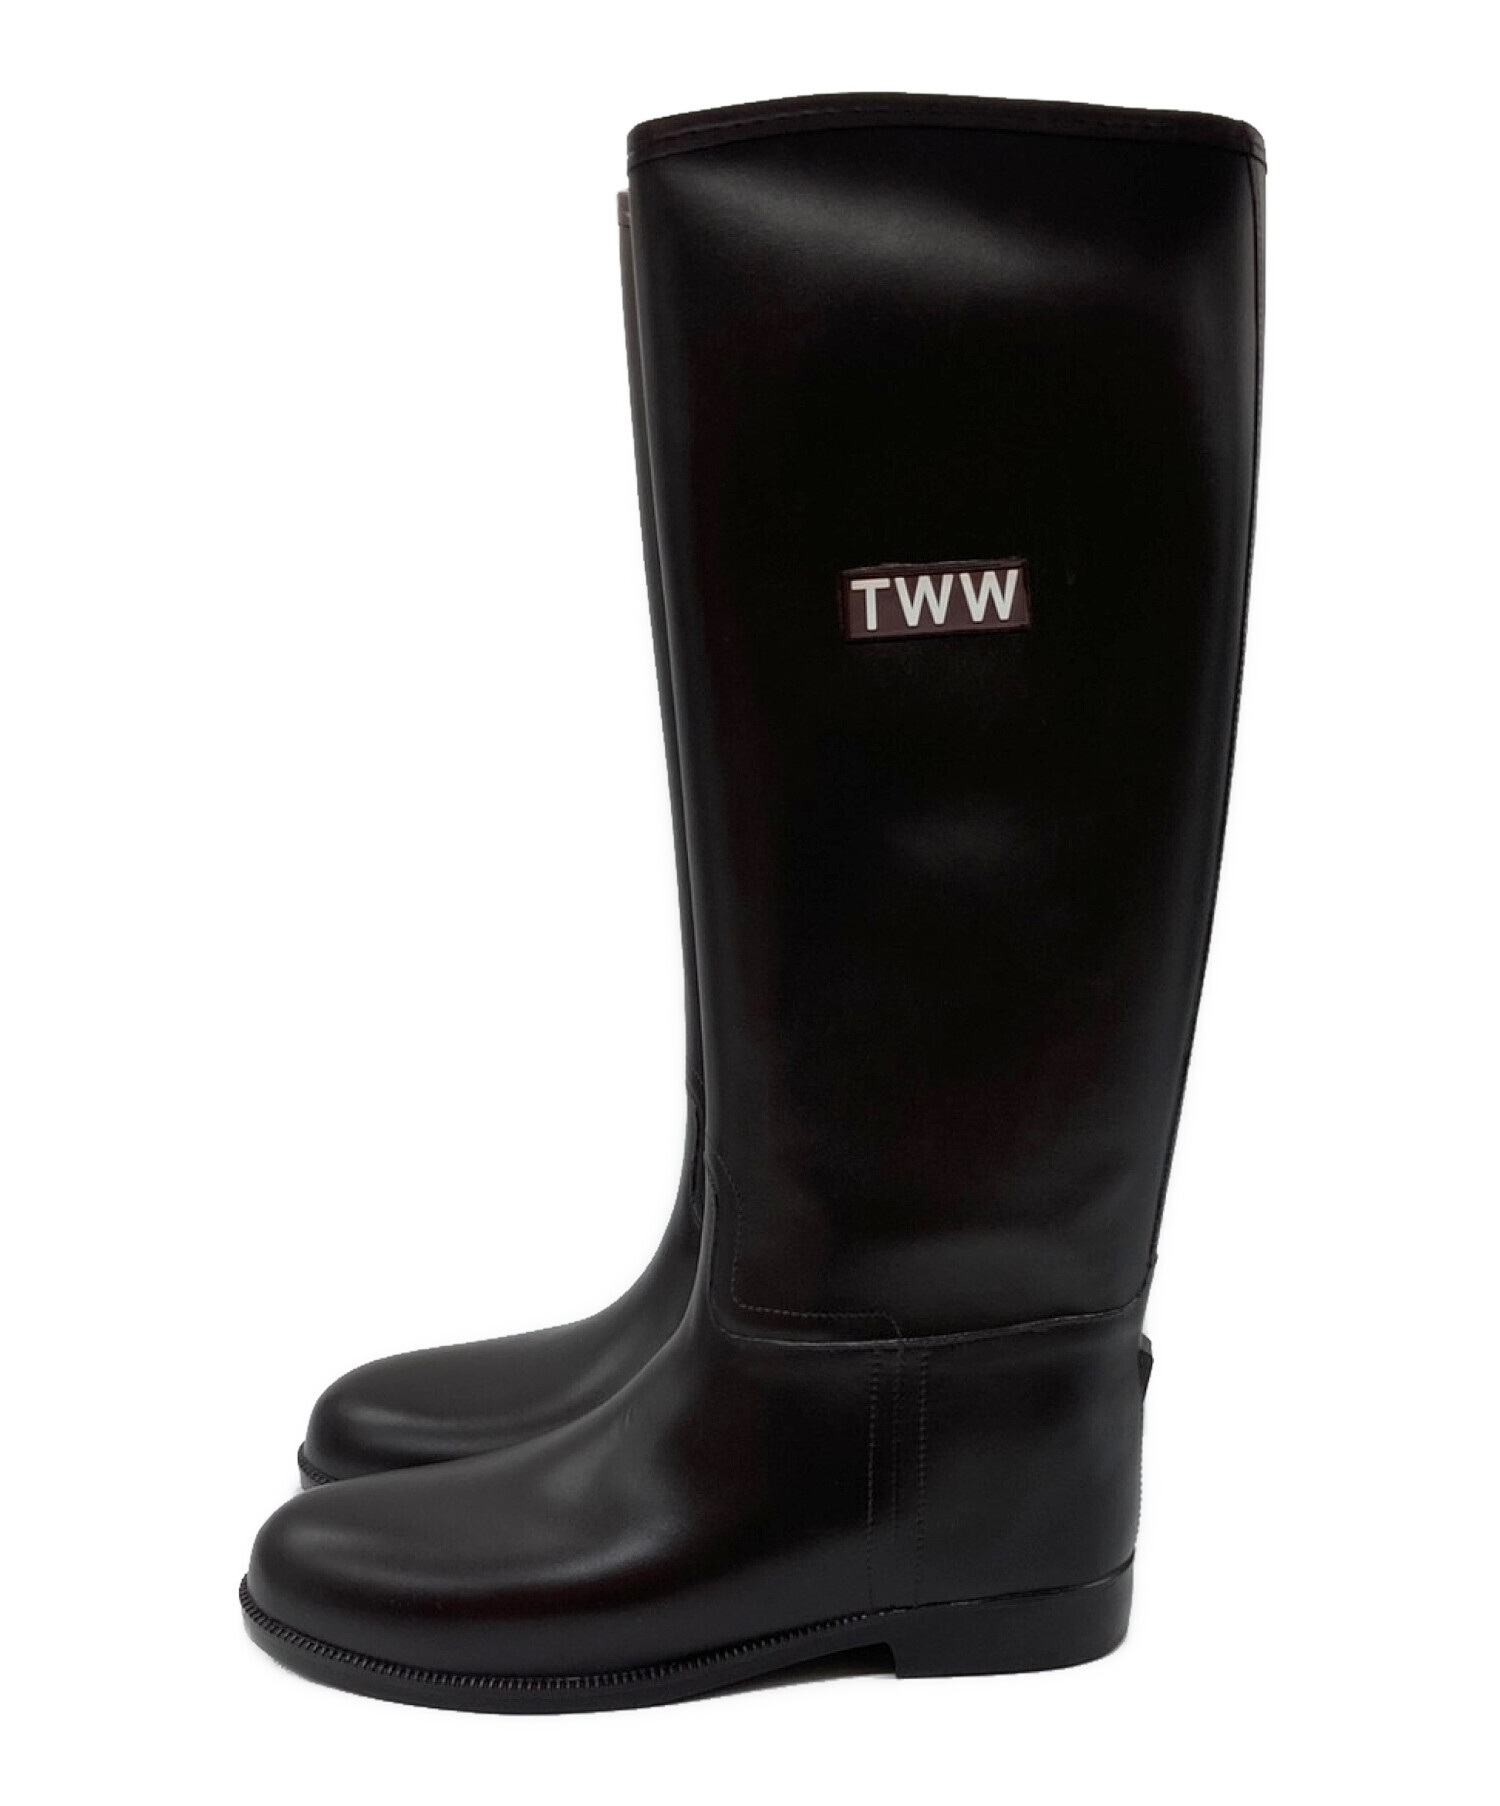 Traditional Weatherwear (トラディショナルウェザーウェア) TWW LONG RAIN BOOTS / レインブーツ ブラウン  サイズ:37